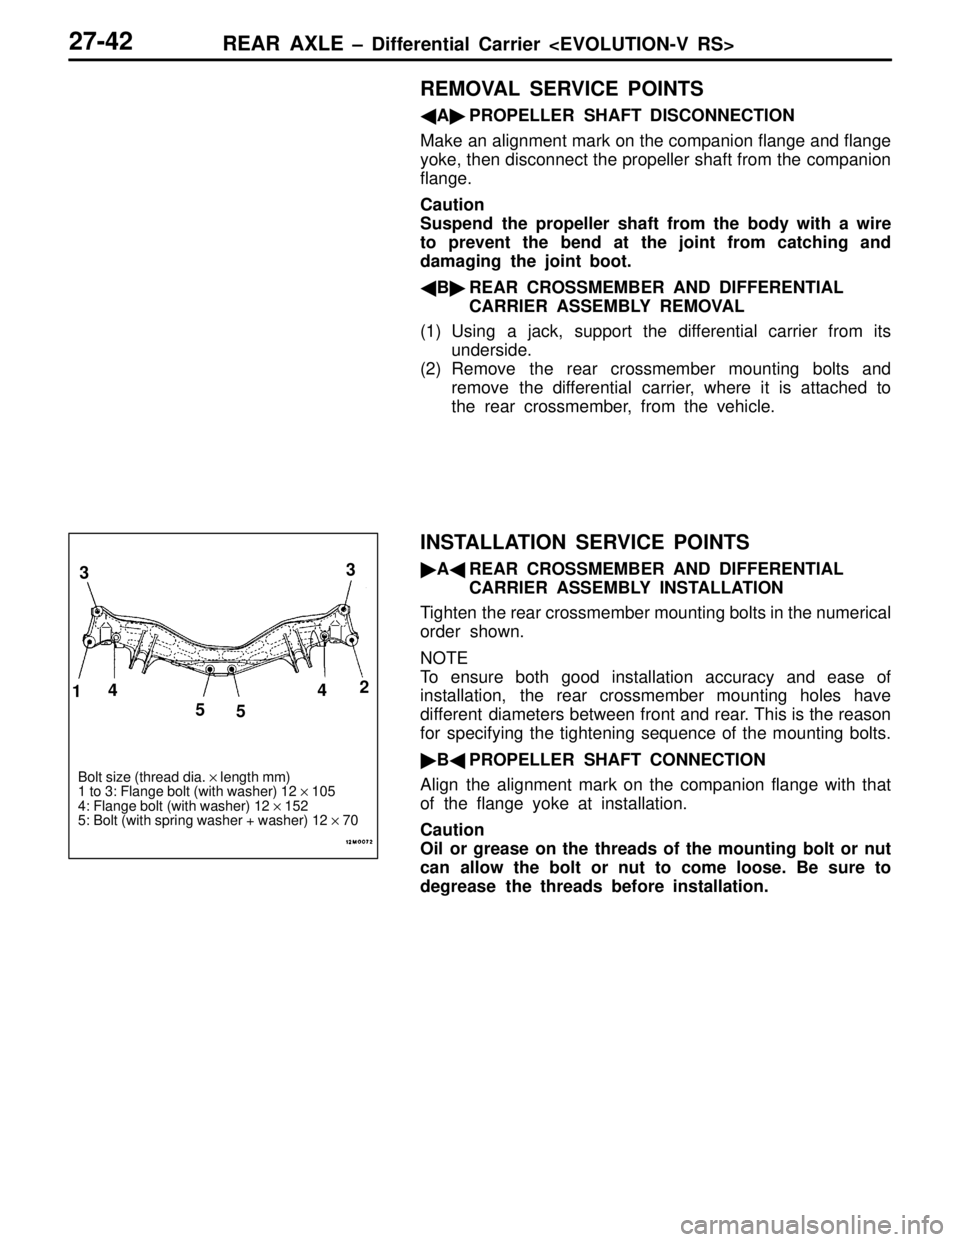 MITSUBISHI LANCER EVOLUTION IV 1998  Workshop Manual REAR AXLE – Differential Carrier <EVOLUTION-V RS>27-42
REMOVAL SERVICE POINTS
APROPELLER SHAFT DISCONNECTION
Make an alignment mark on the companion flange and flange
yoke, then disconnect the pro